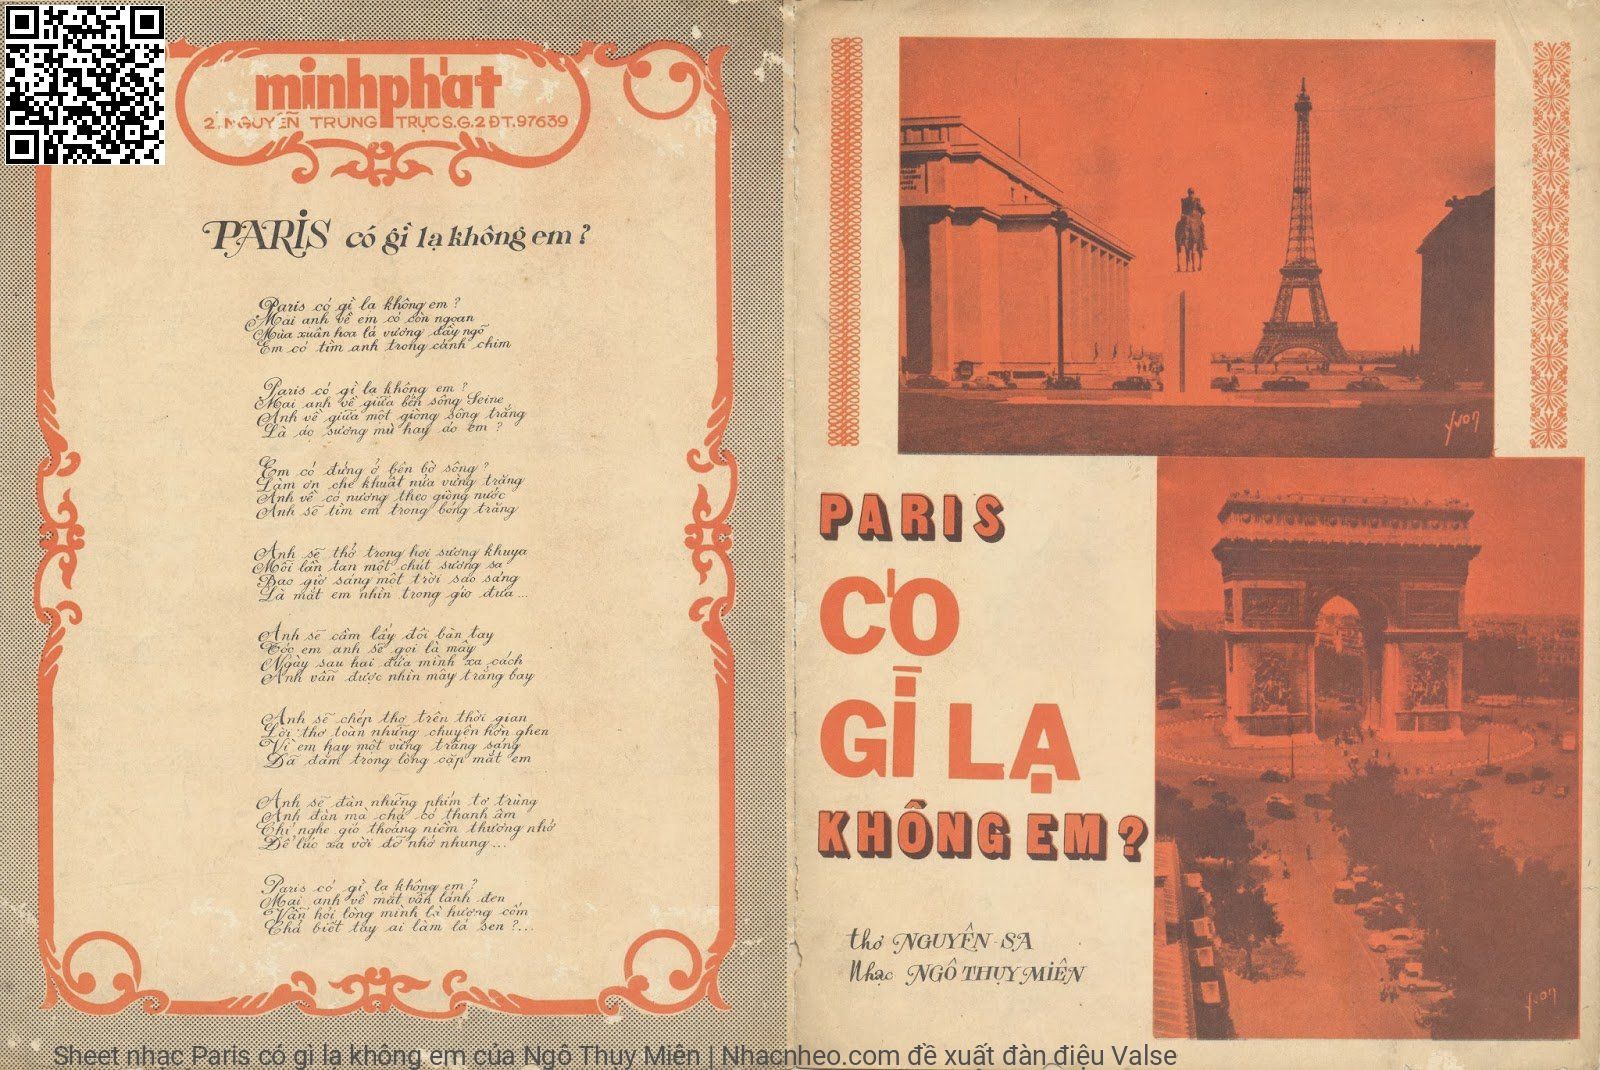 Sheet nhạc Paris có gì lạ không em